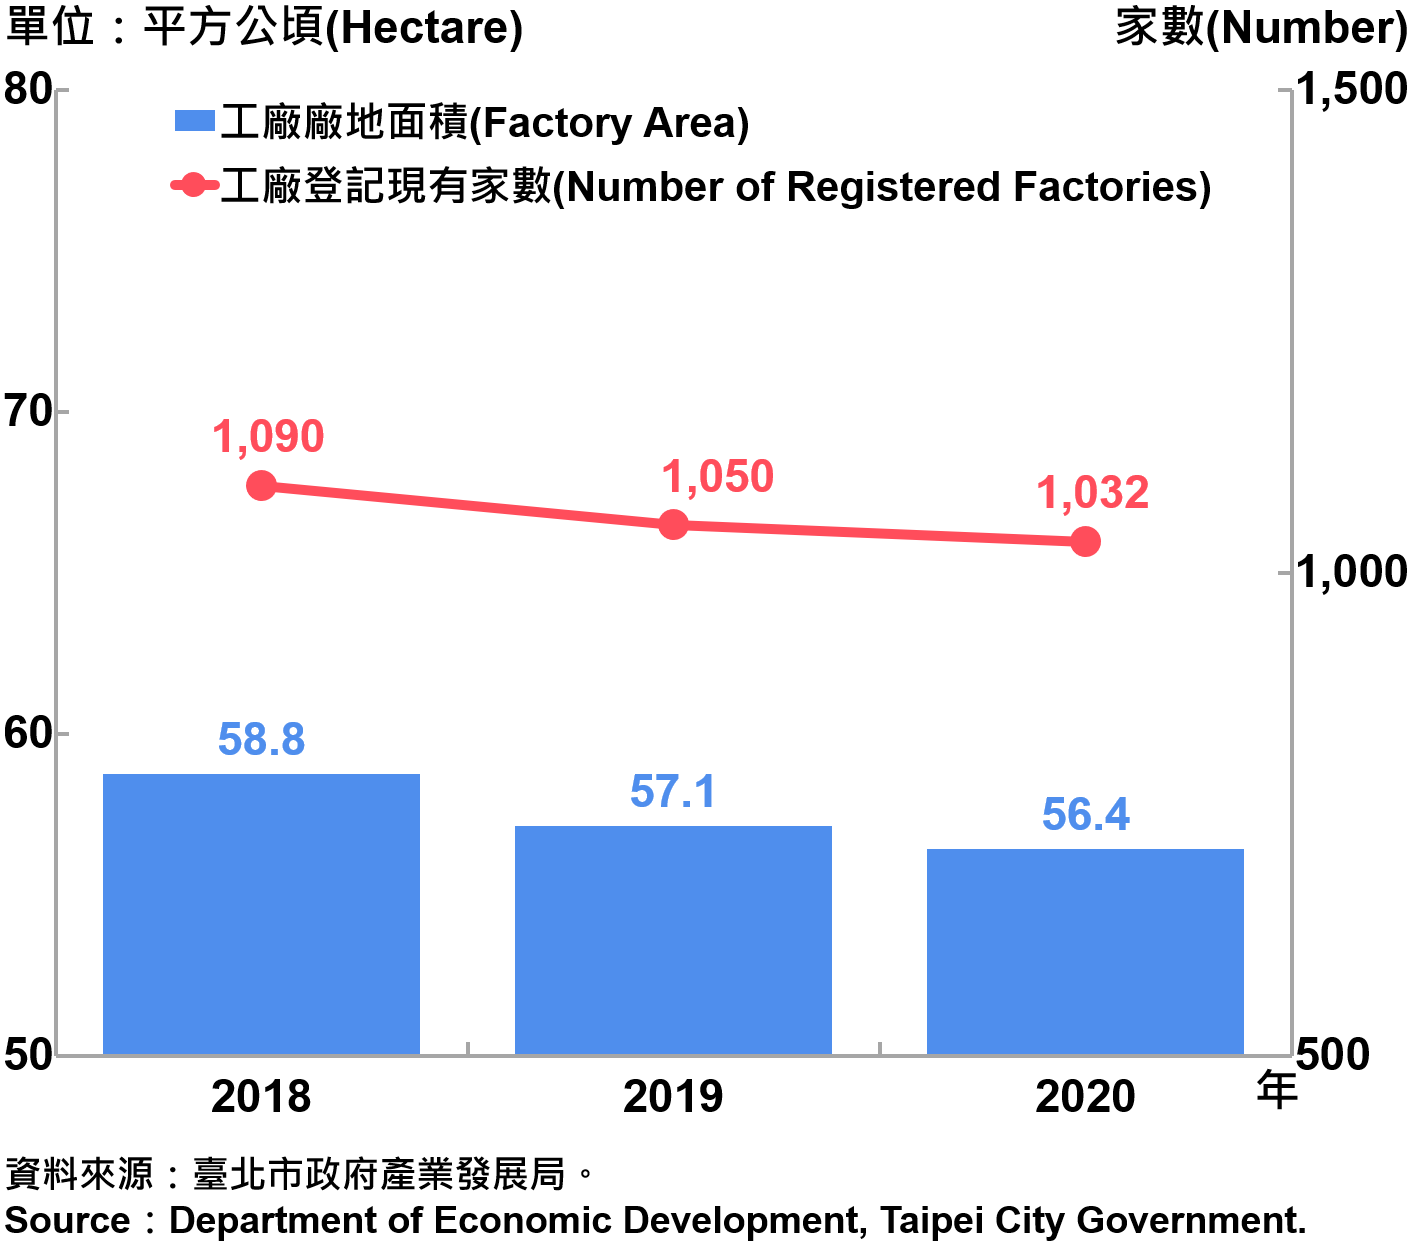 臺北市工廠登記家數及廠地面積—2020 Number of Factories Registered and Factory Lands in Taipei—2020